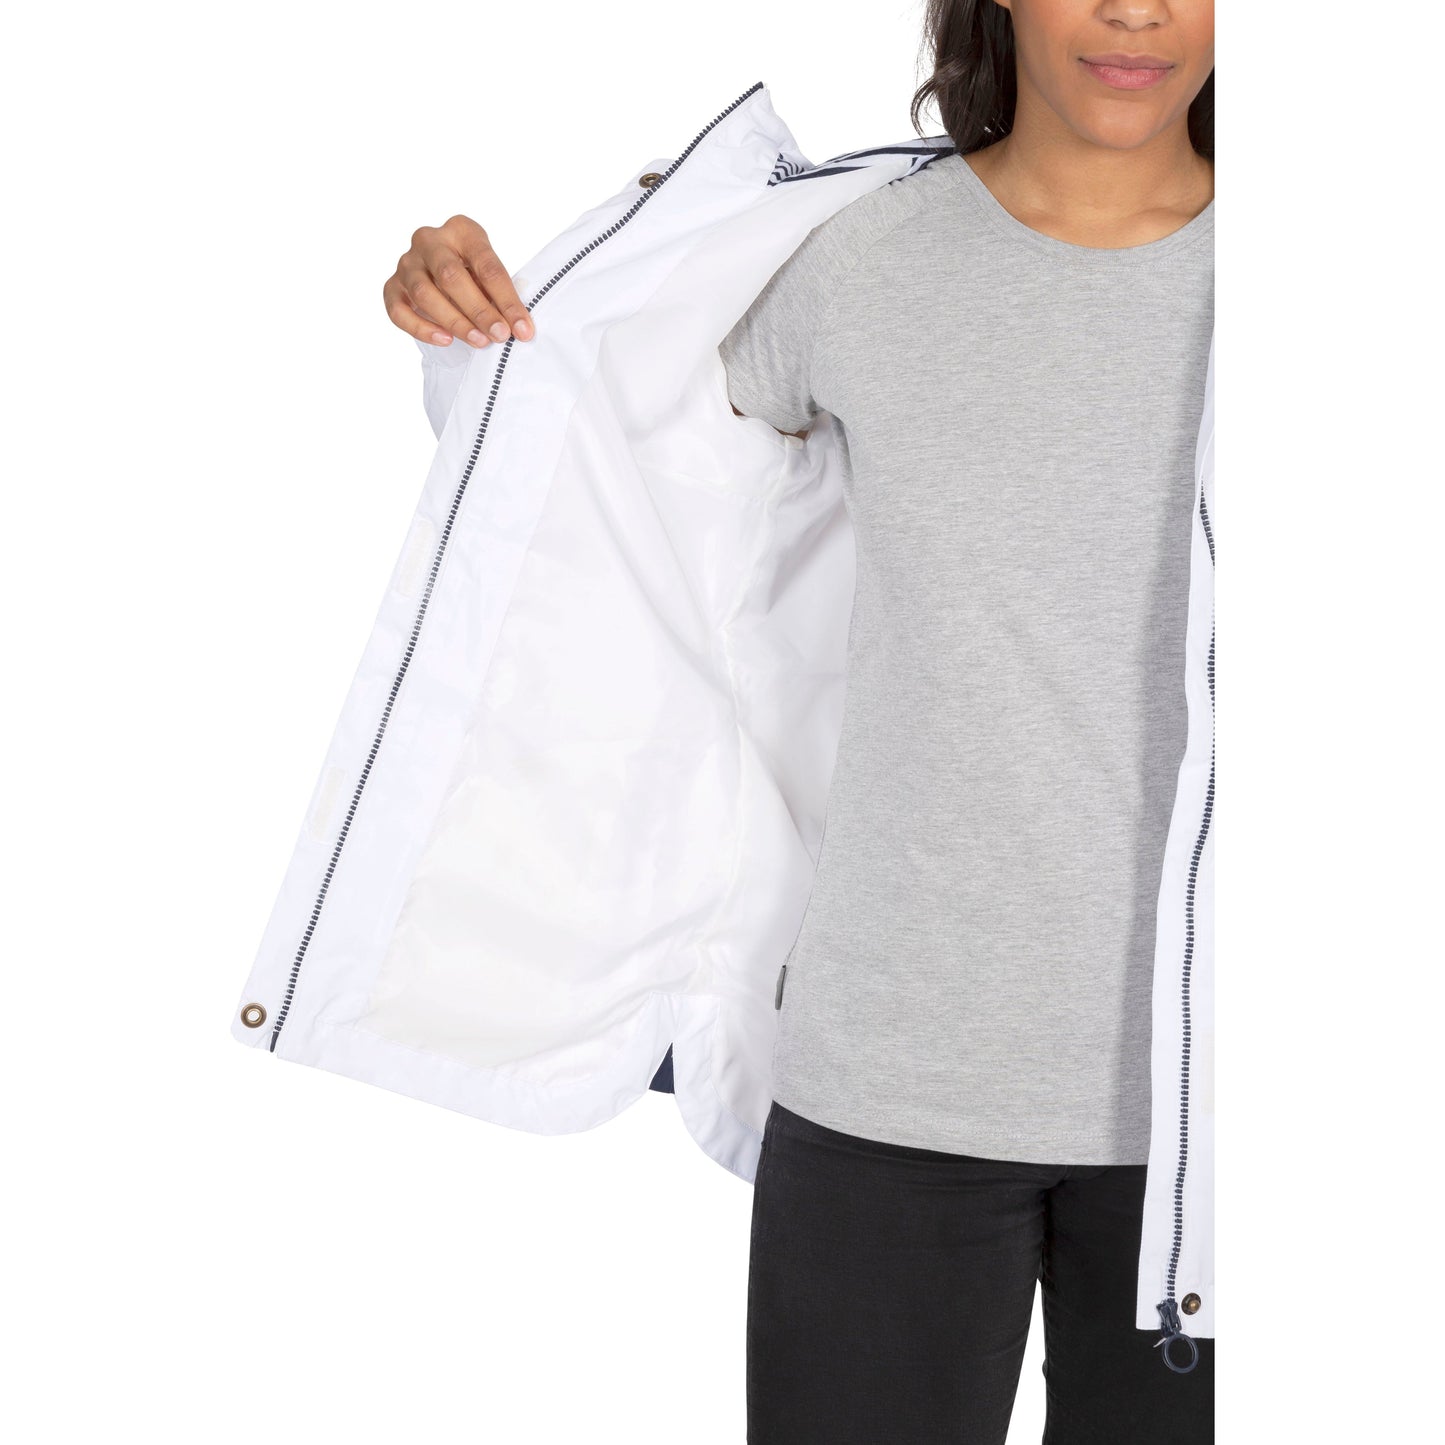 Flourish Womens Unpadded Waterproof Jacket in White